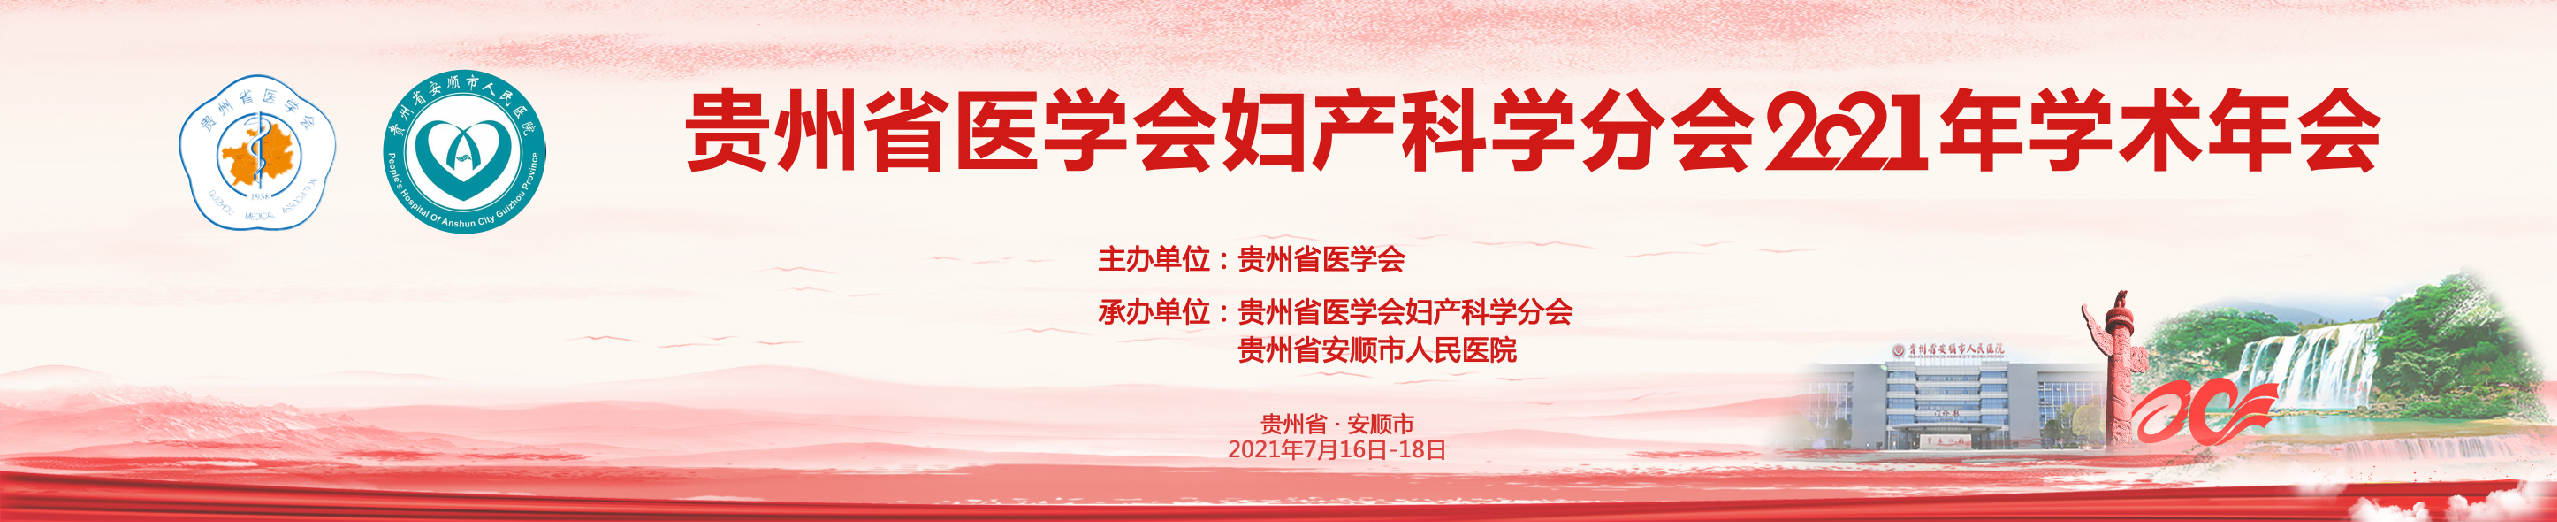 贵州省医学会妇产科学分会2021年学术年会